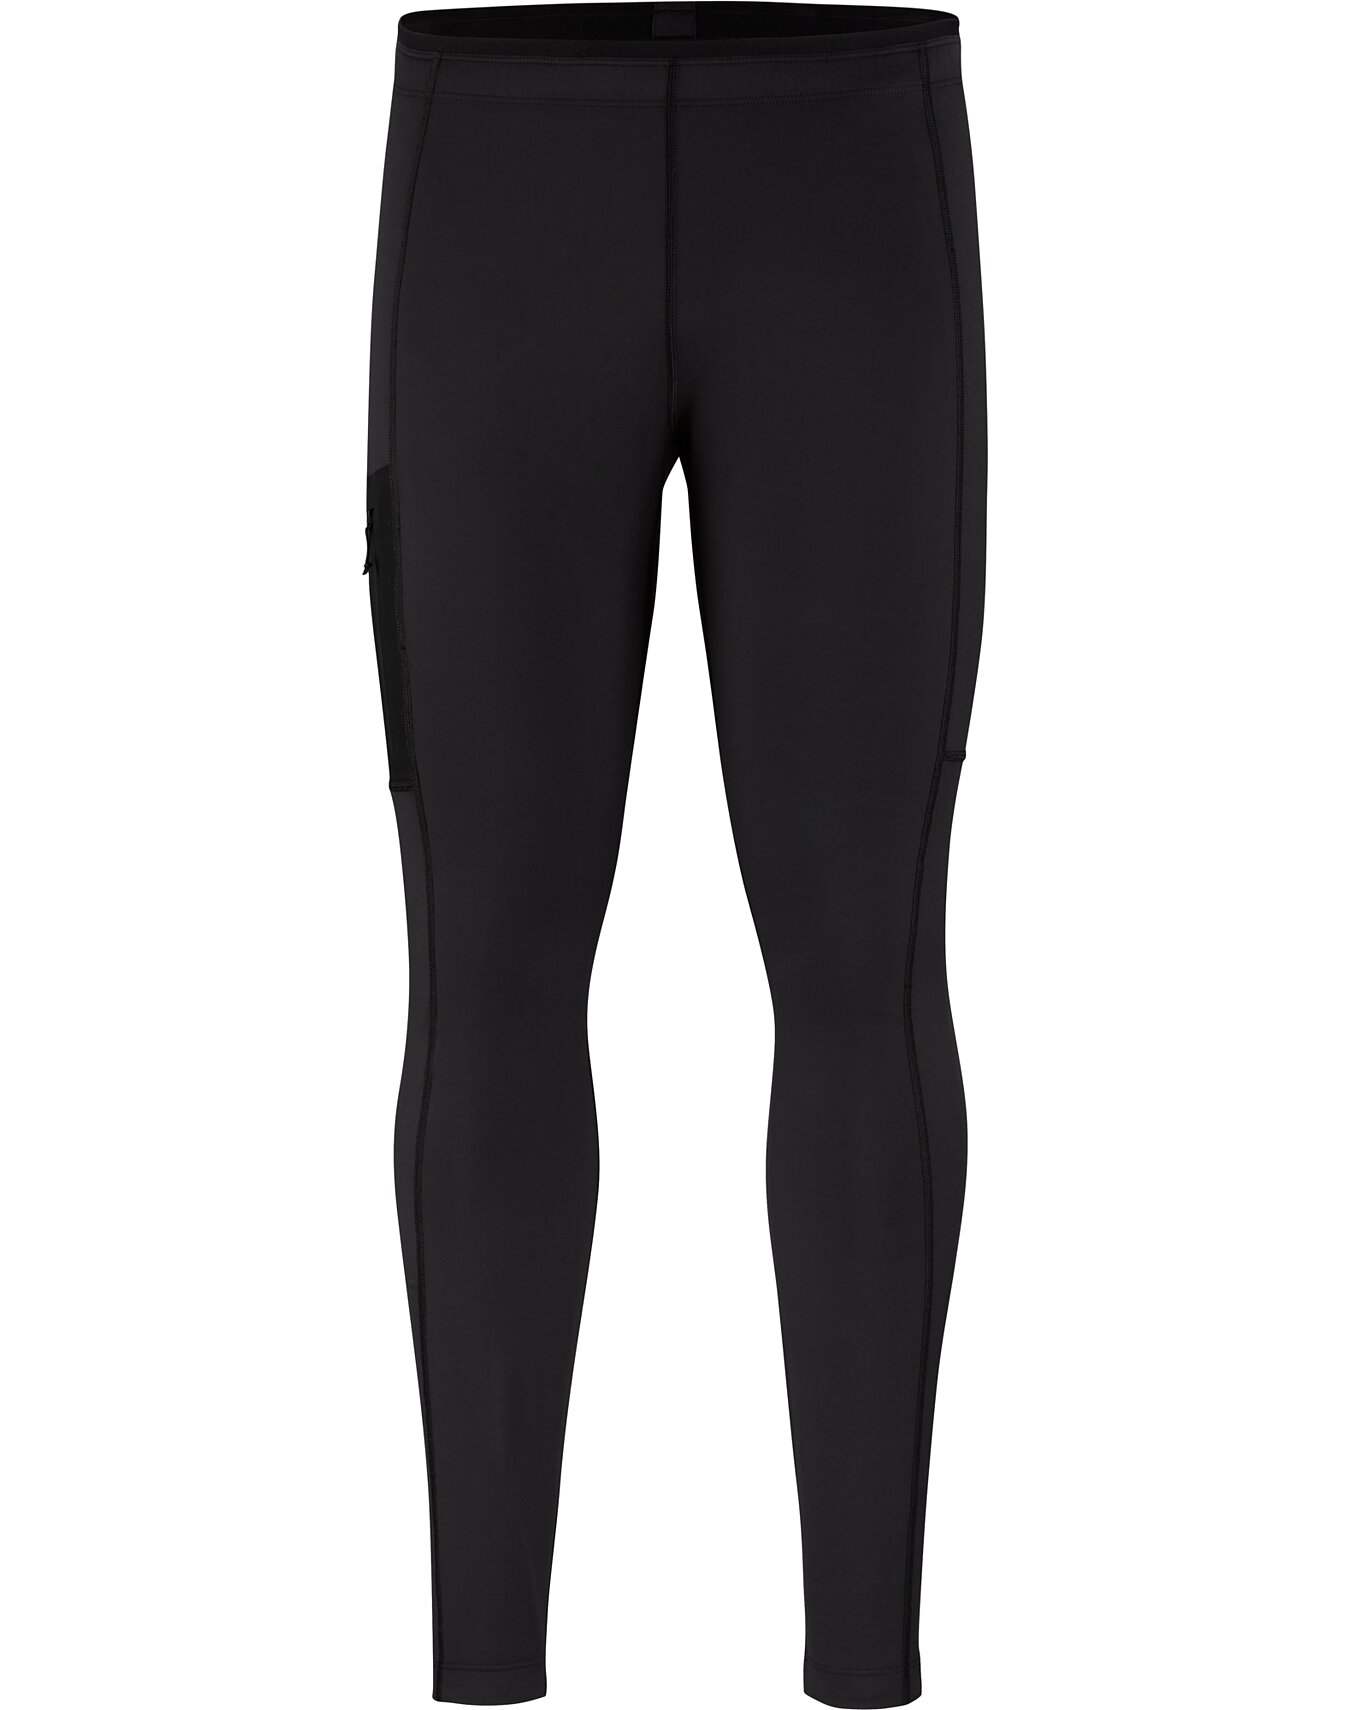 ODLO-BLACKCOMB ECO BL BOTTOM 3/4 BLACK - Thermal leggings